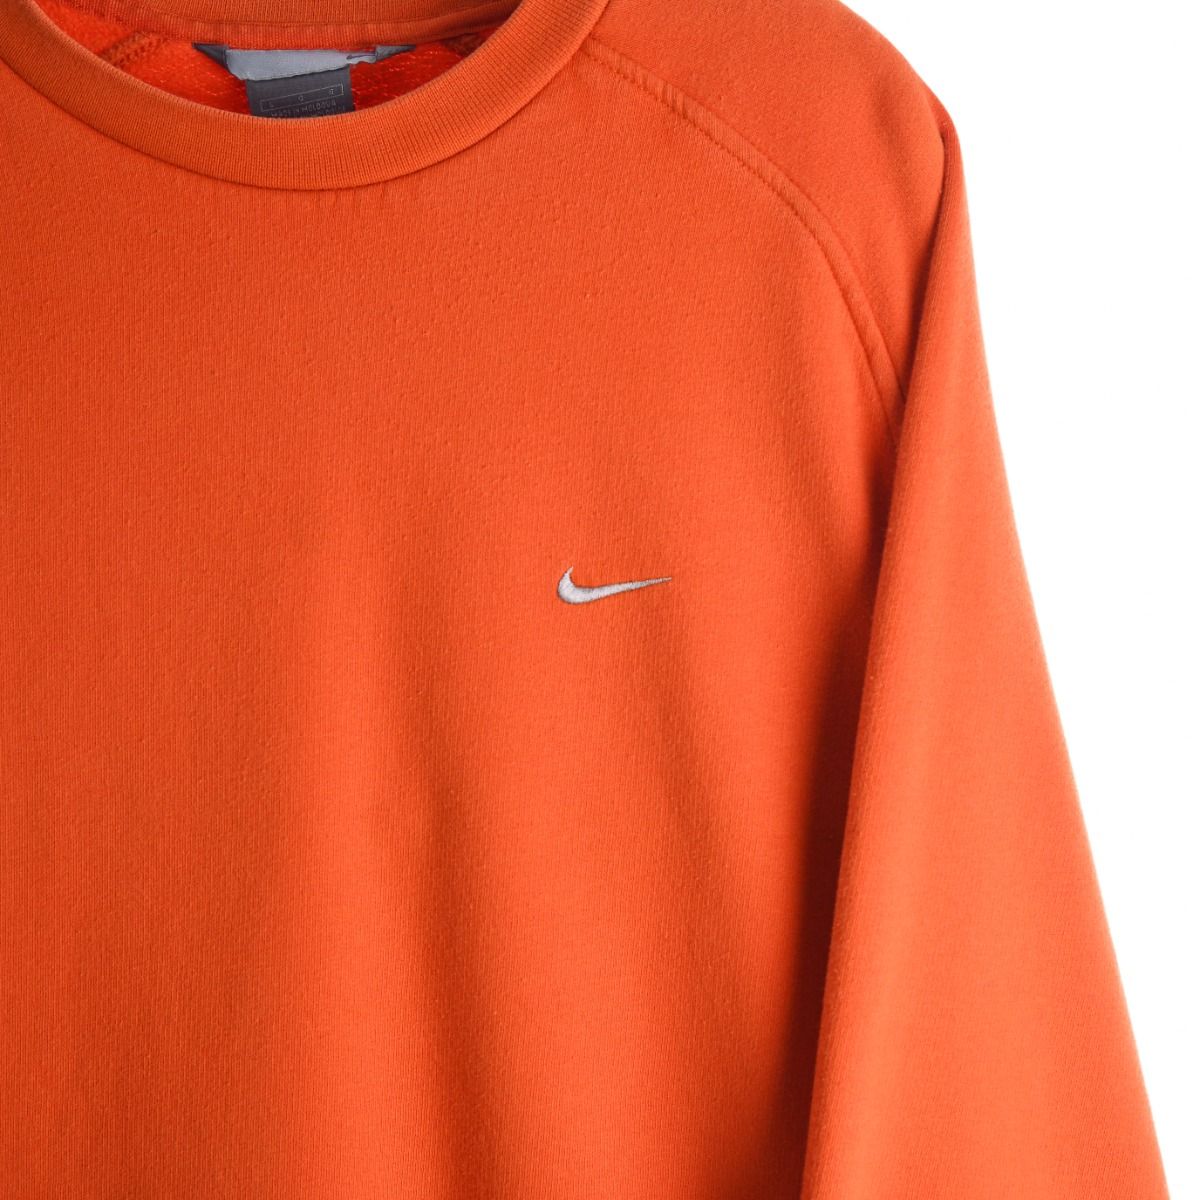 Nike Early 2000s Orange Sweatshirt